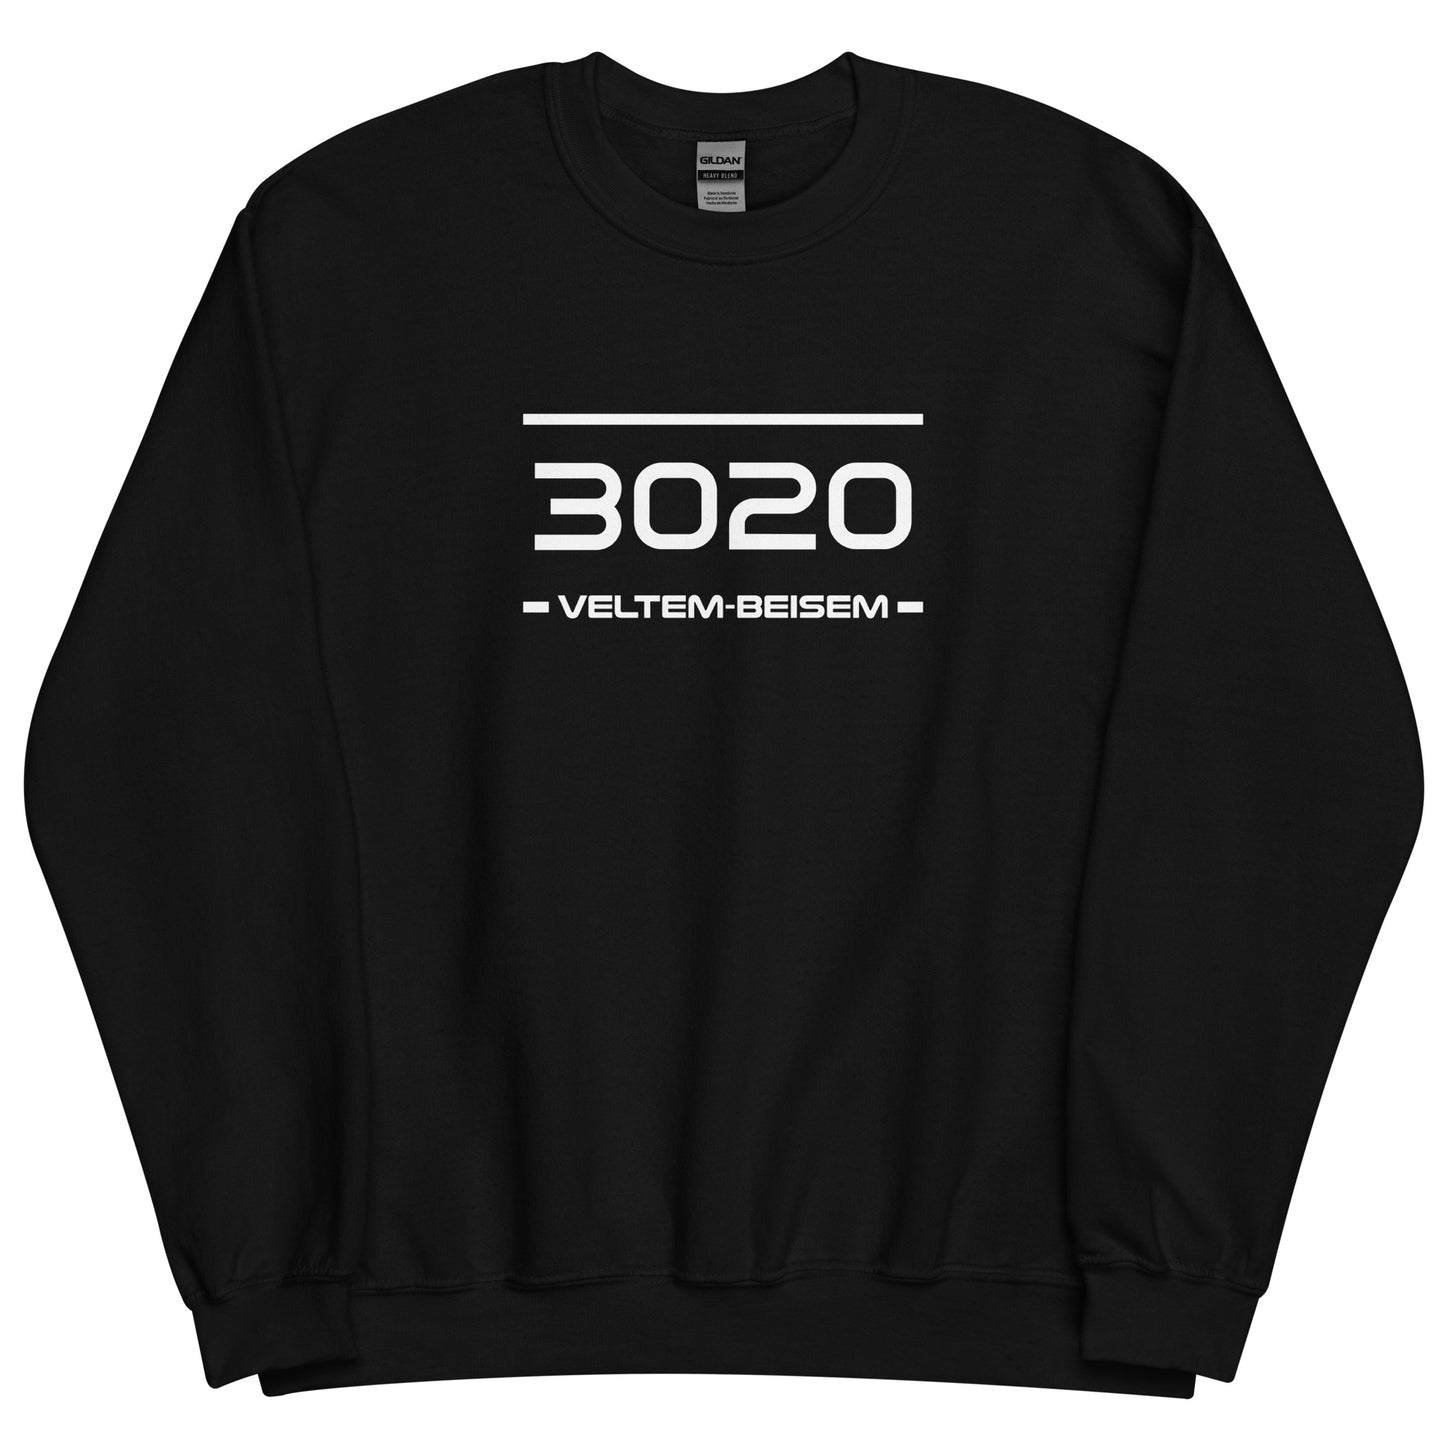 Sweater - 3020 - Veltem-Beisem (M/V)